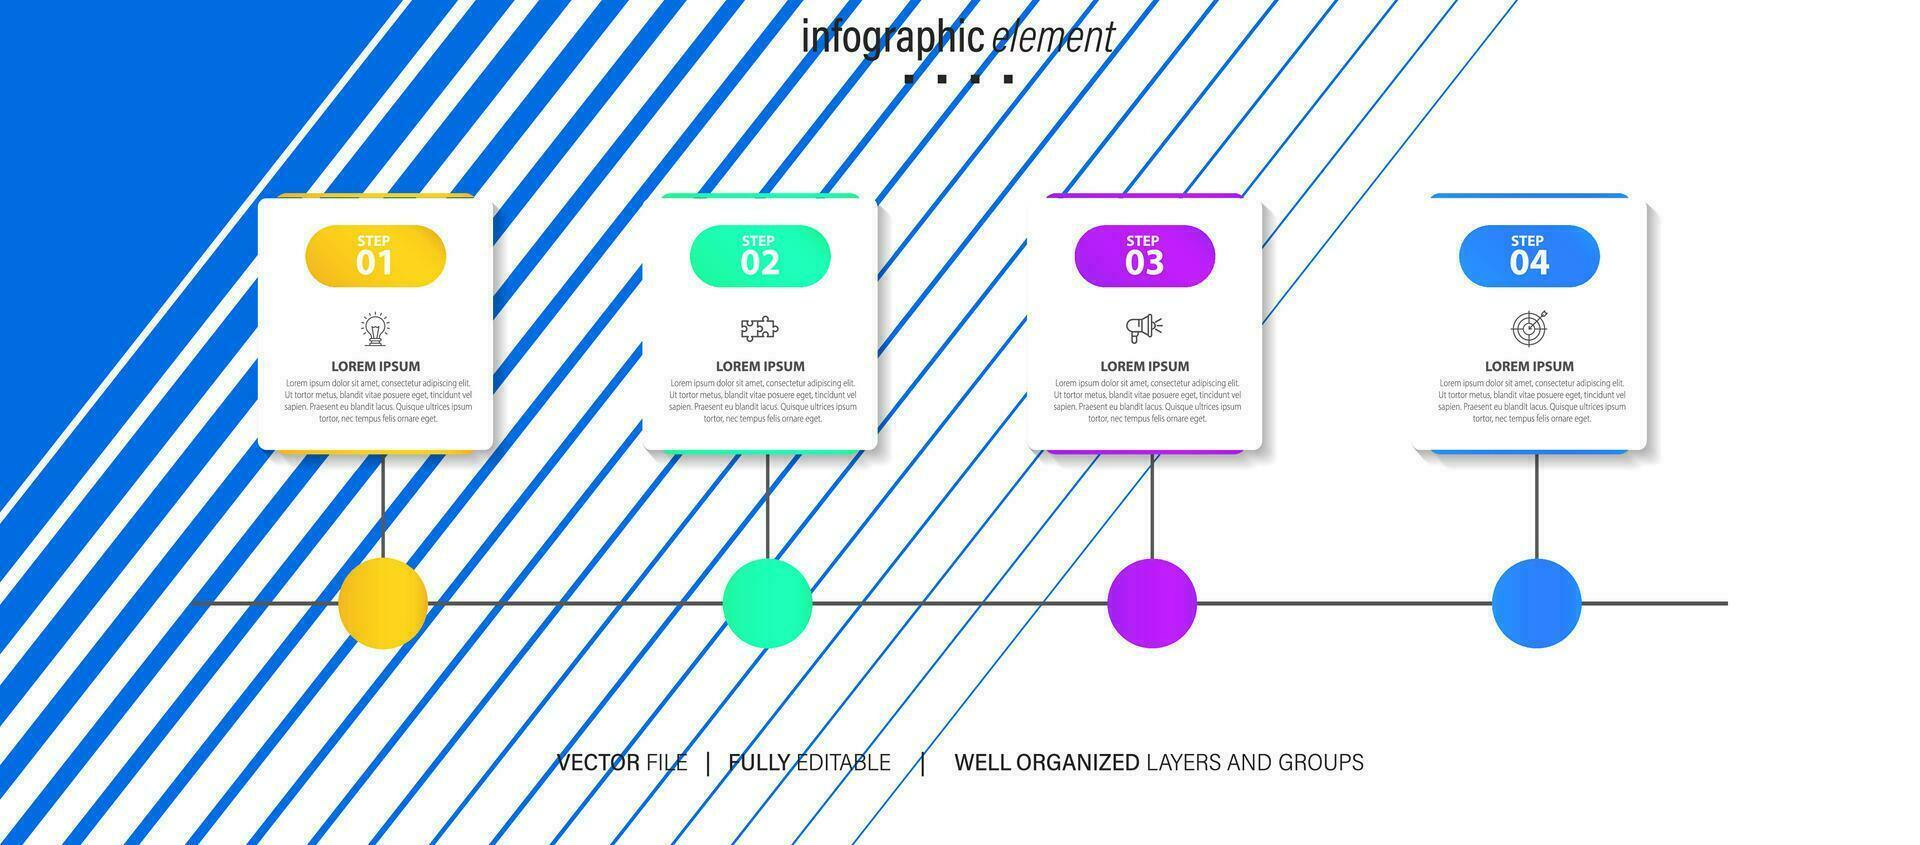 infographic design mall med plats för din data. vektor illustration.